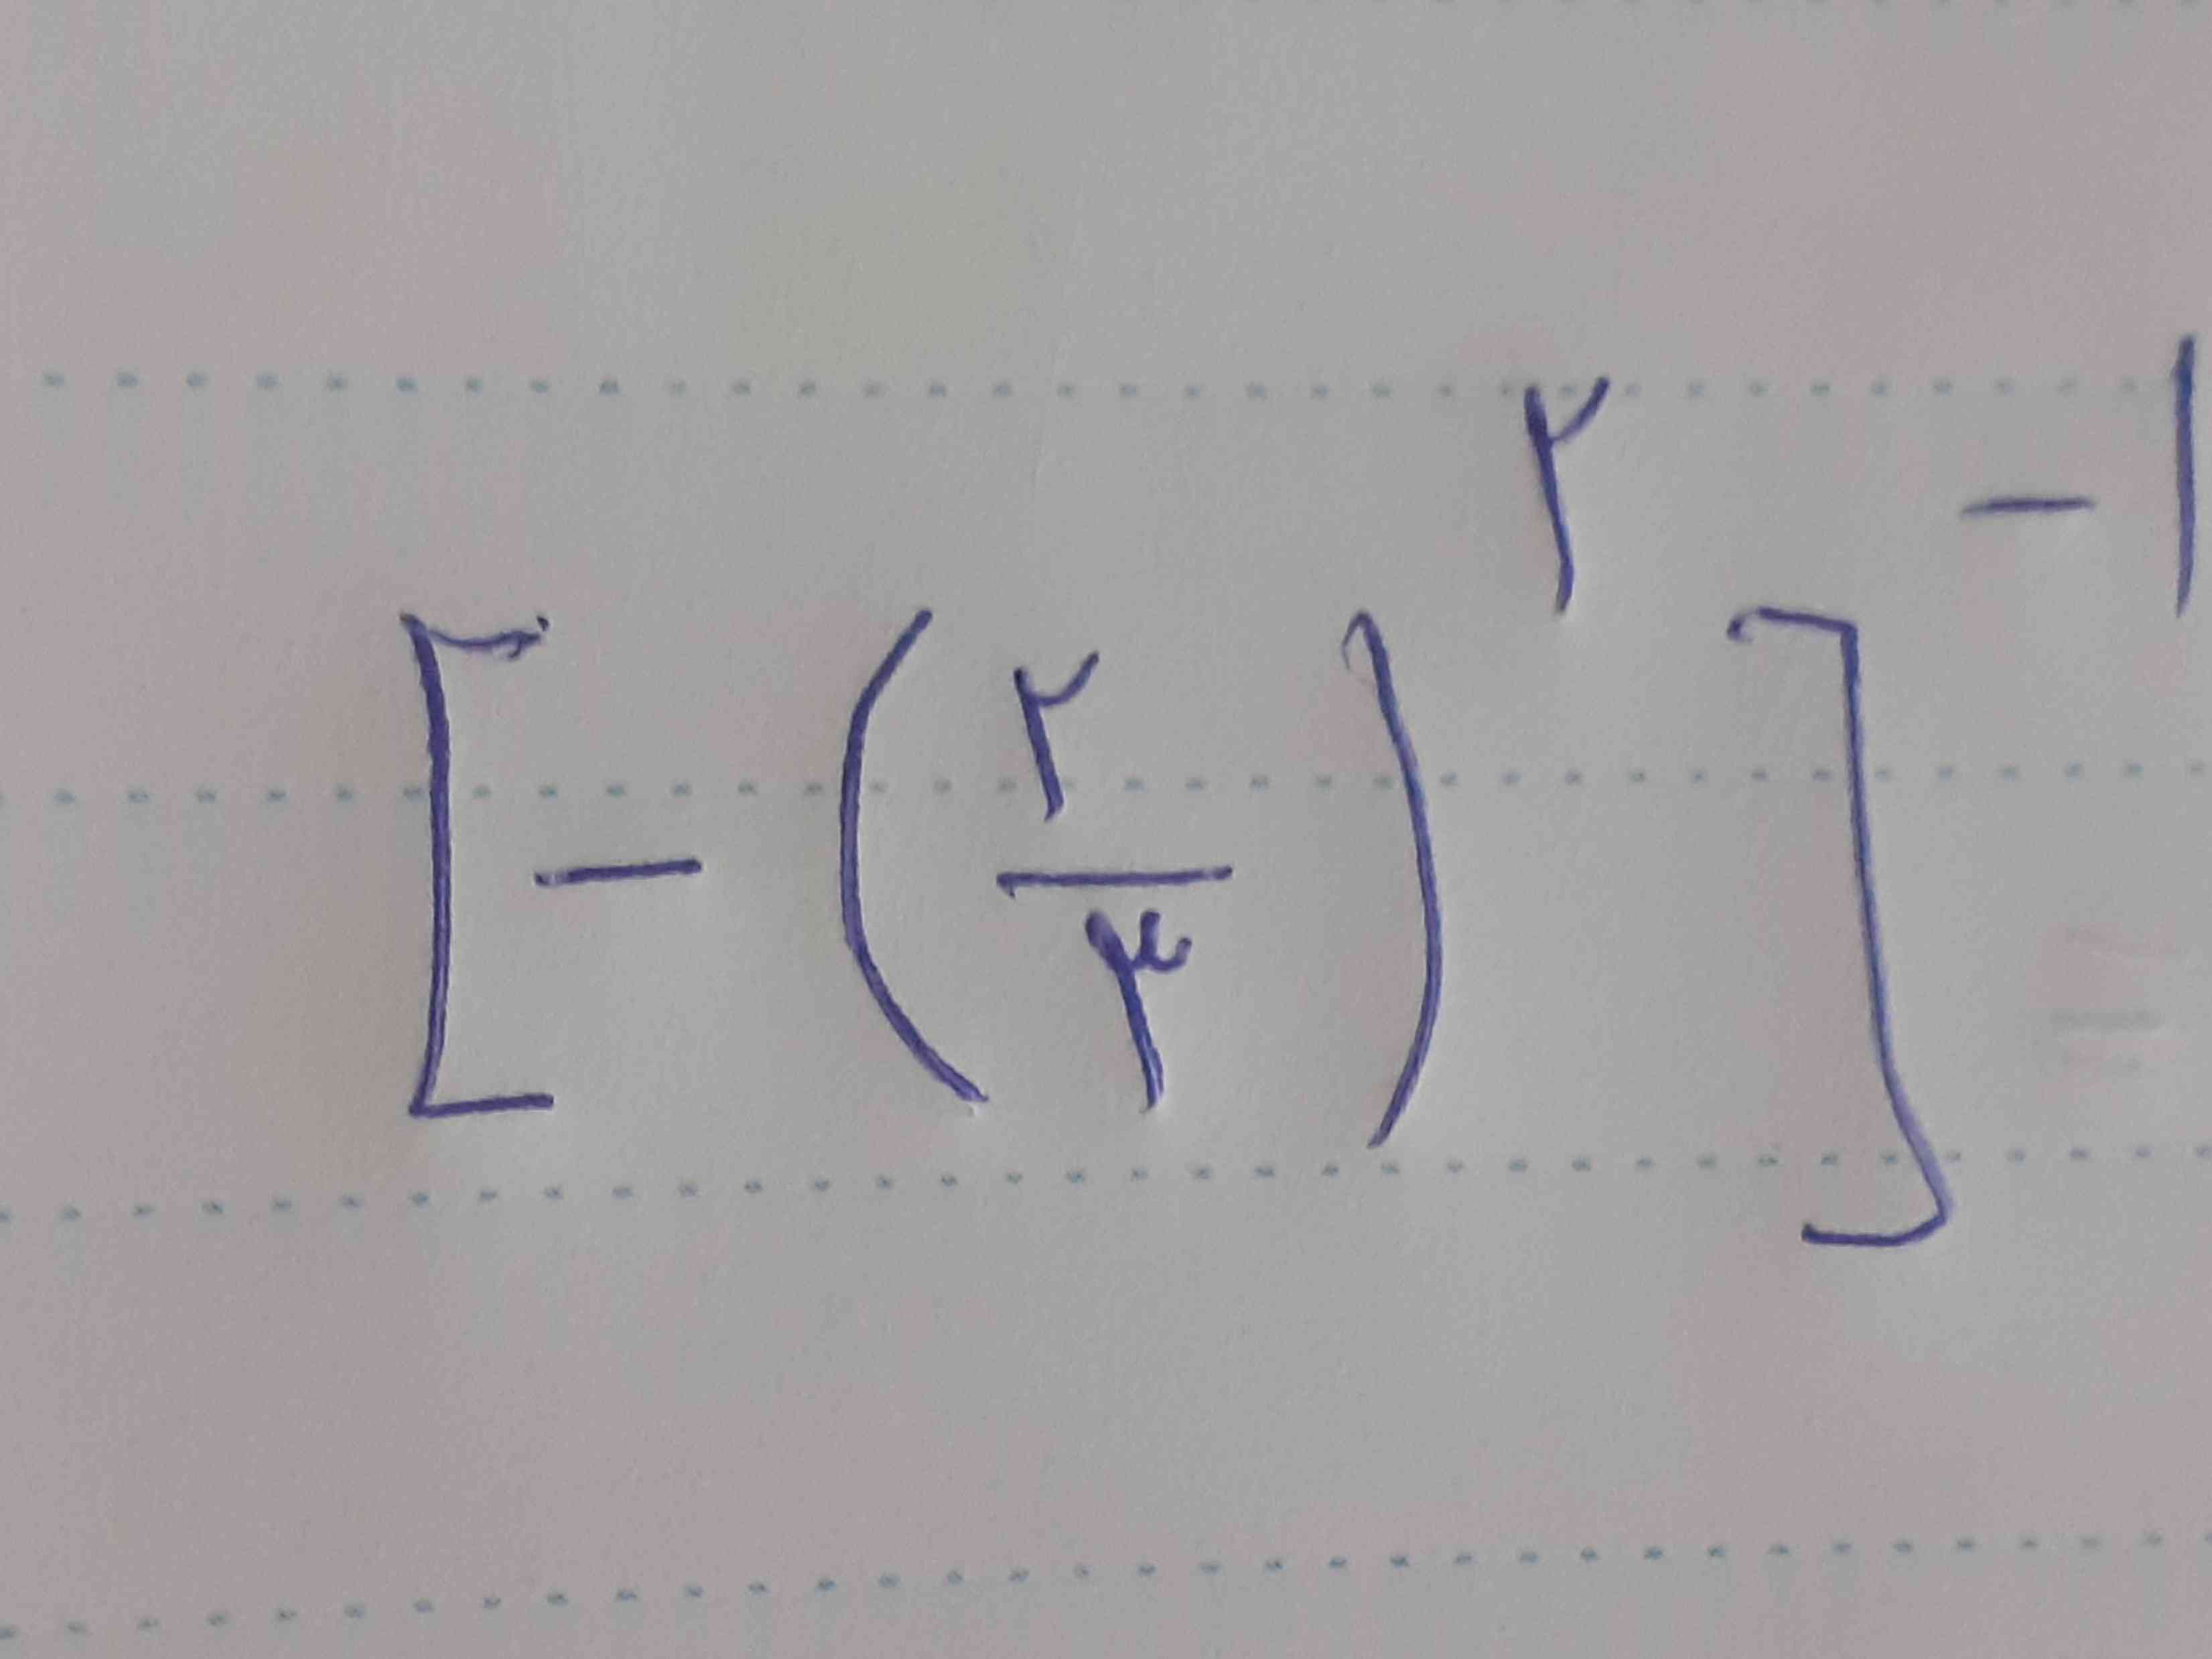 جواب معادلہ ی زیر برابر است با؟
